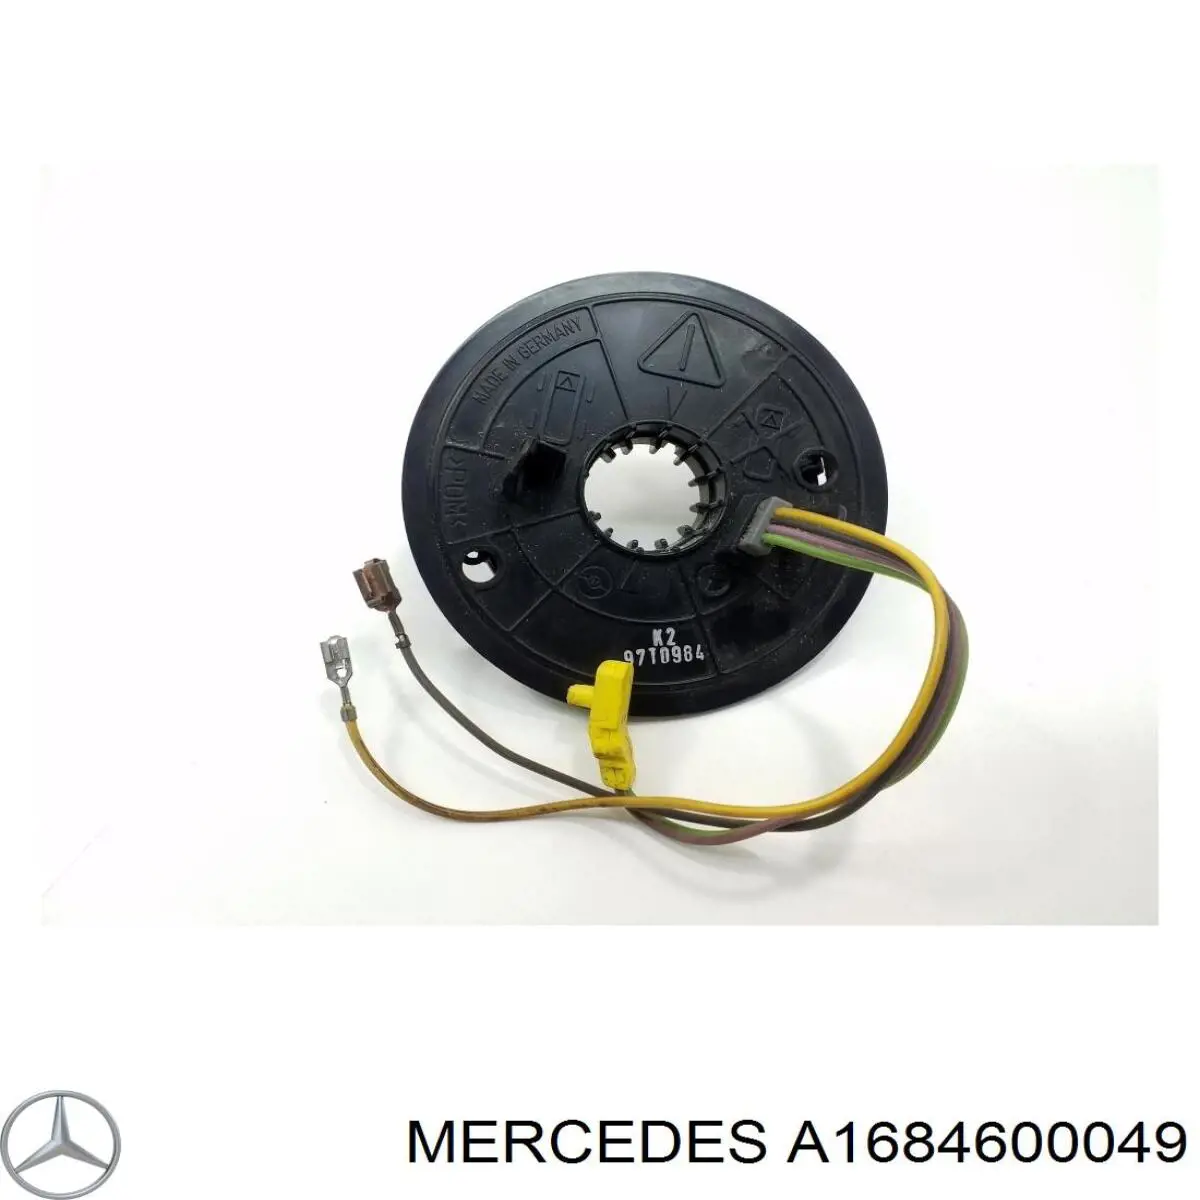 A1684600049 Mercedes anillo de airbag